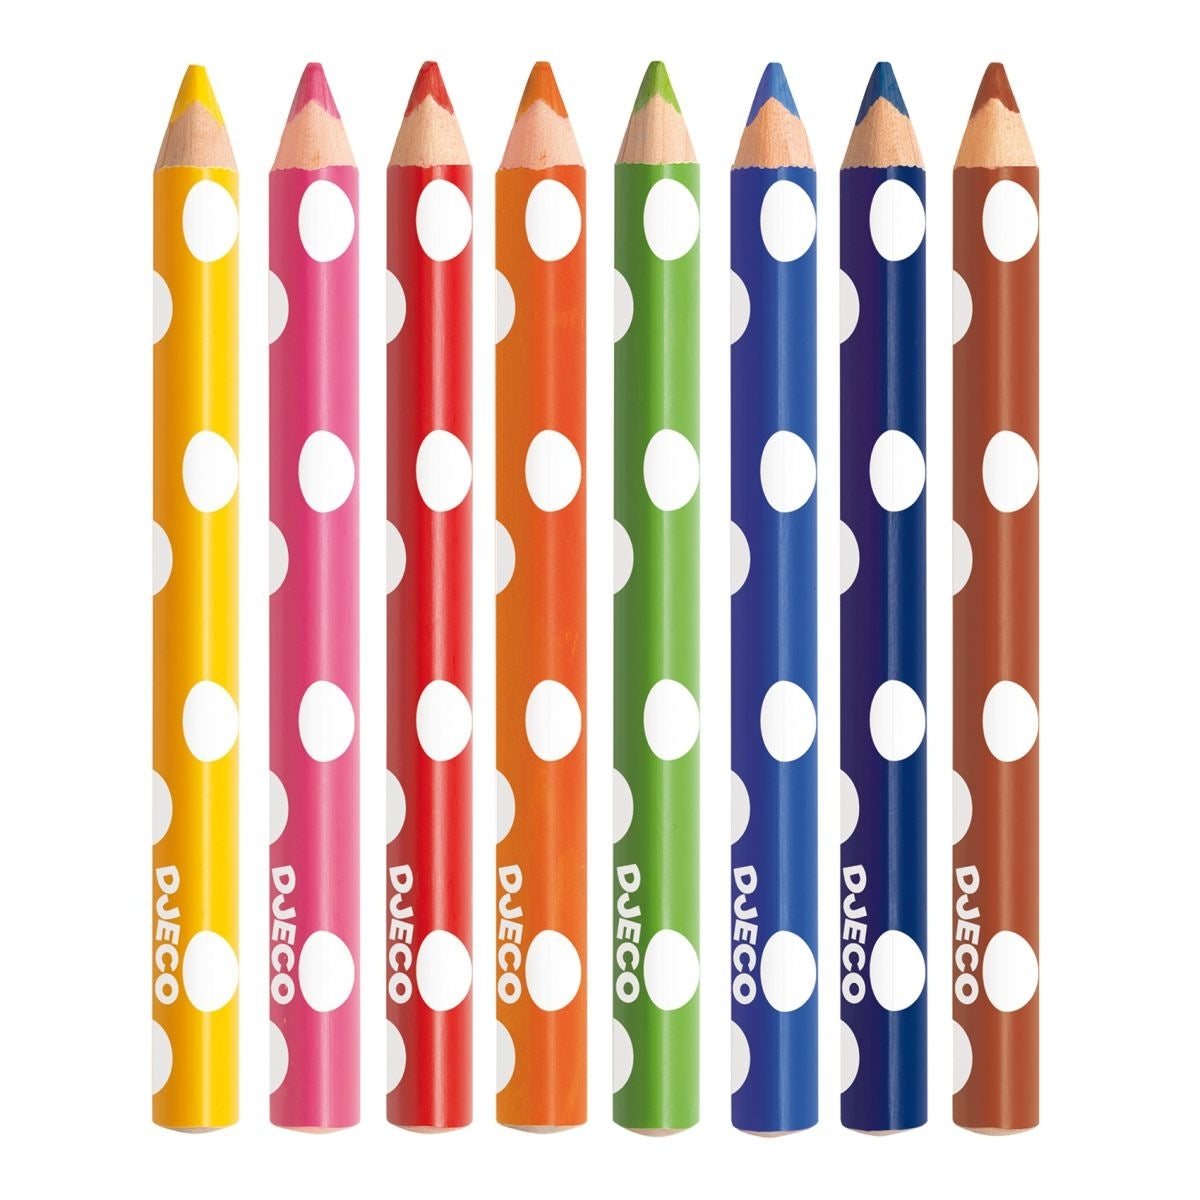 Mit diesen qualitativ hochwertigen Buntstiften von Djeco können sich auch die Kleinsten kreativ ausleben. Ihre spezielle ergonomische Form macht es kleinen Mädchen und Jungen besonders einfach, die Stifte zu greifen, zu halten und zu führen. 